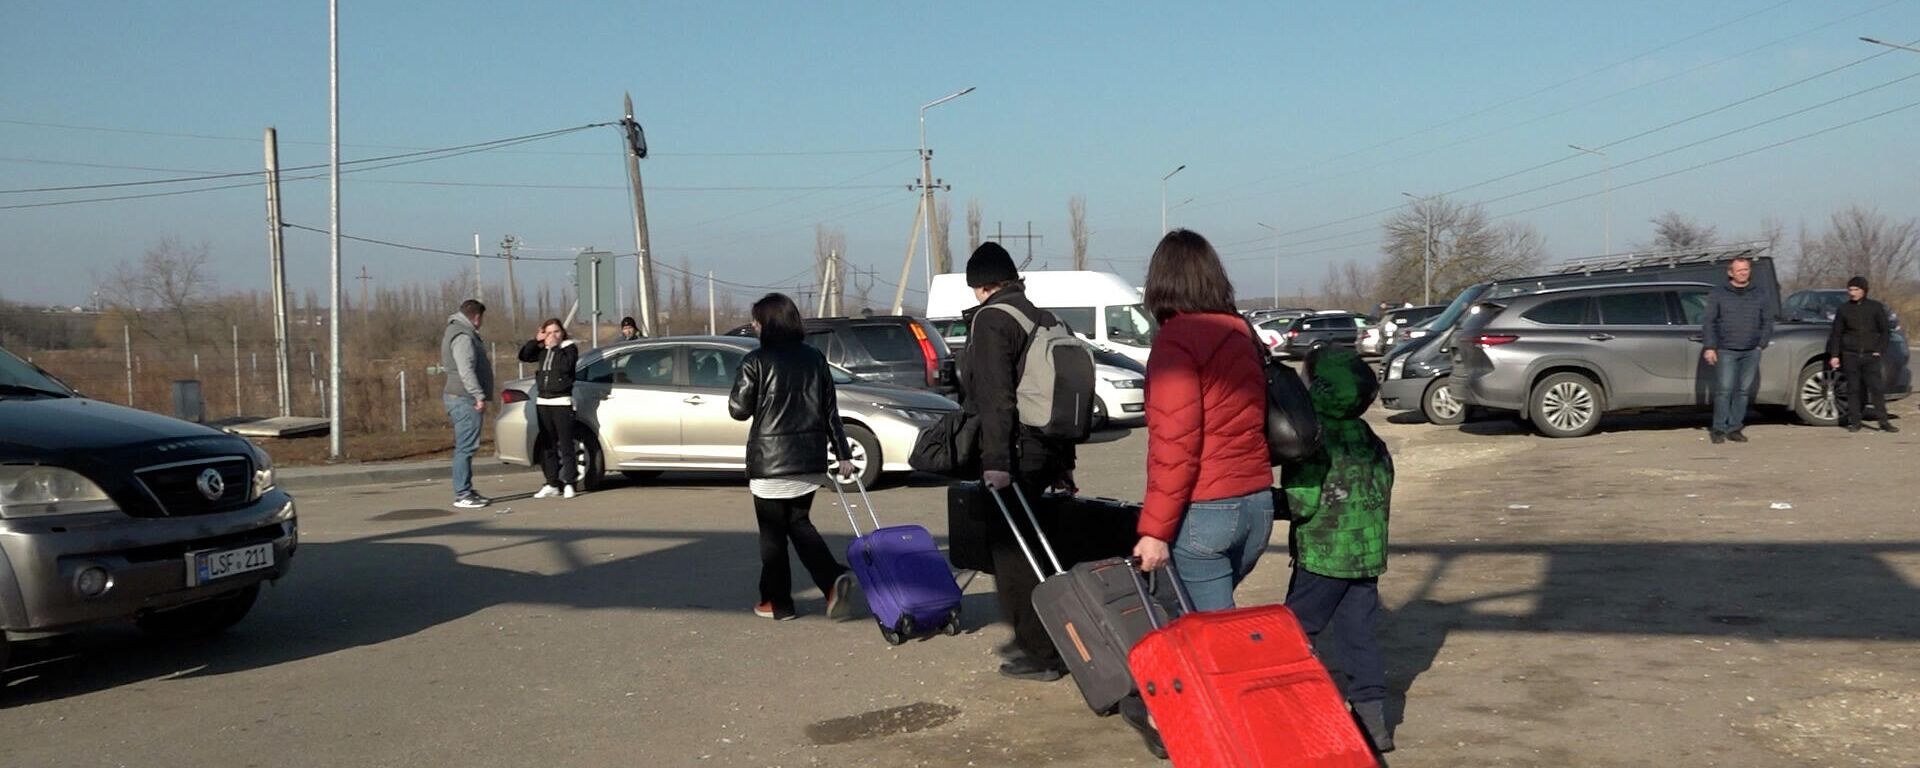 Refugiații din Ucraina continuă să vină în Moldova: Ce se întâmplă la frontieră - Sputnik Moldova, 1920, 25.02.2022